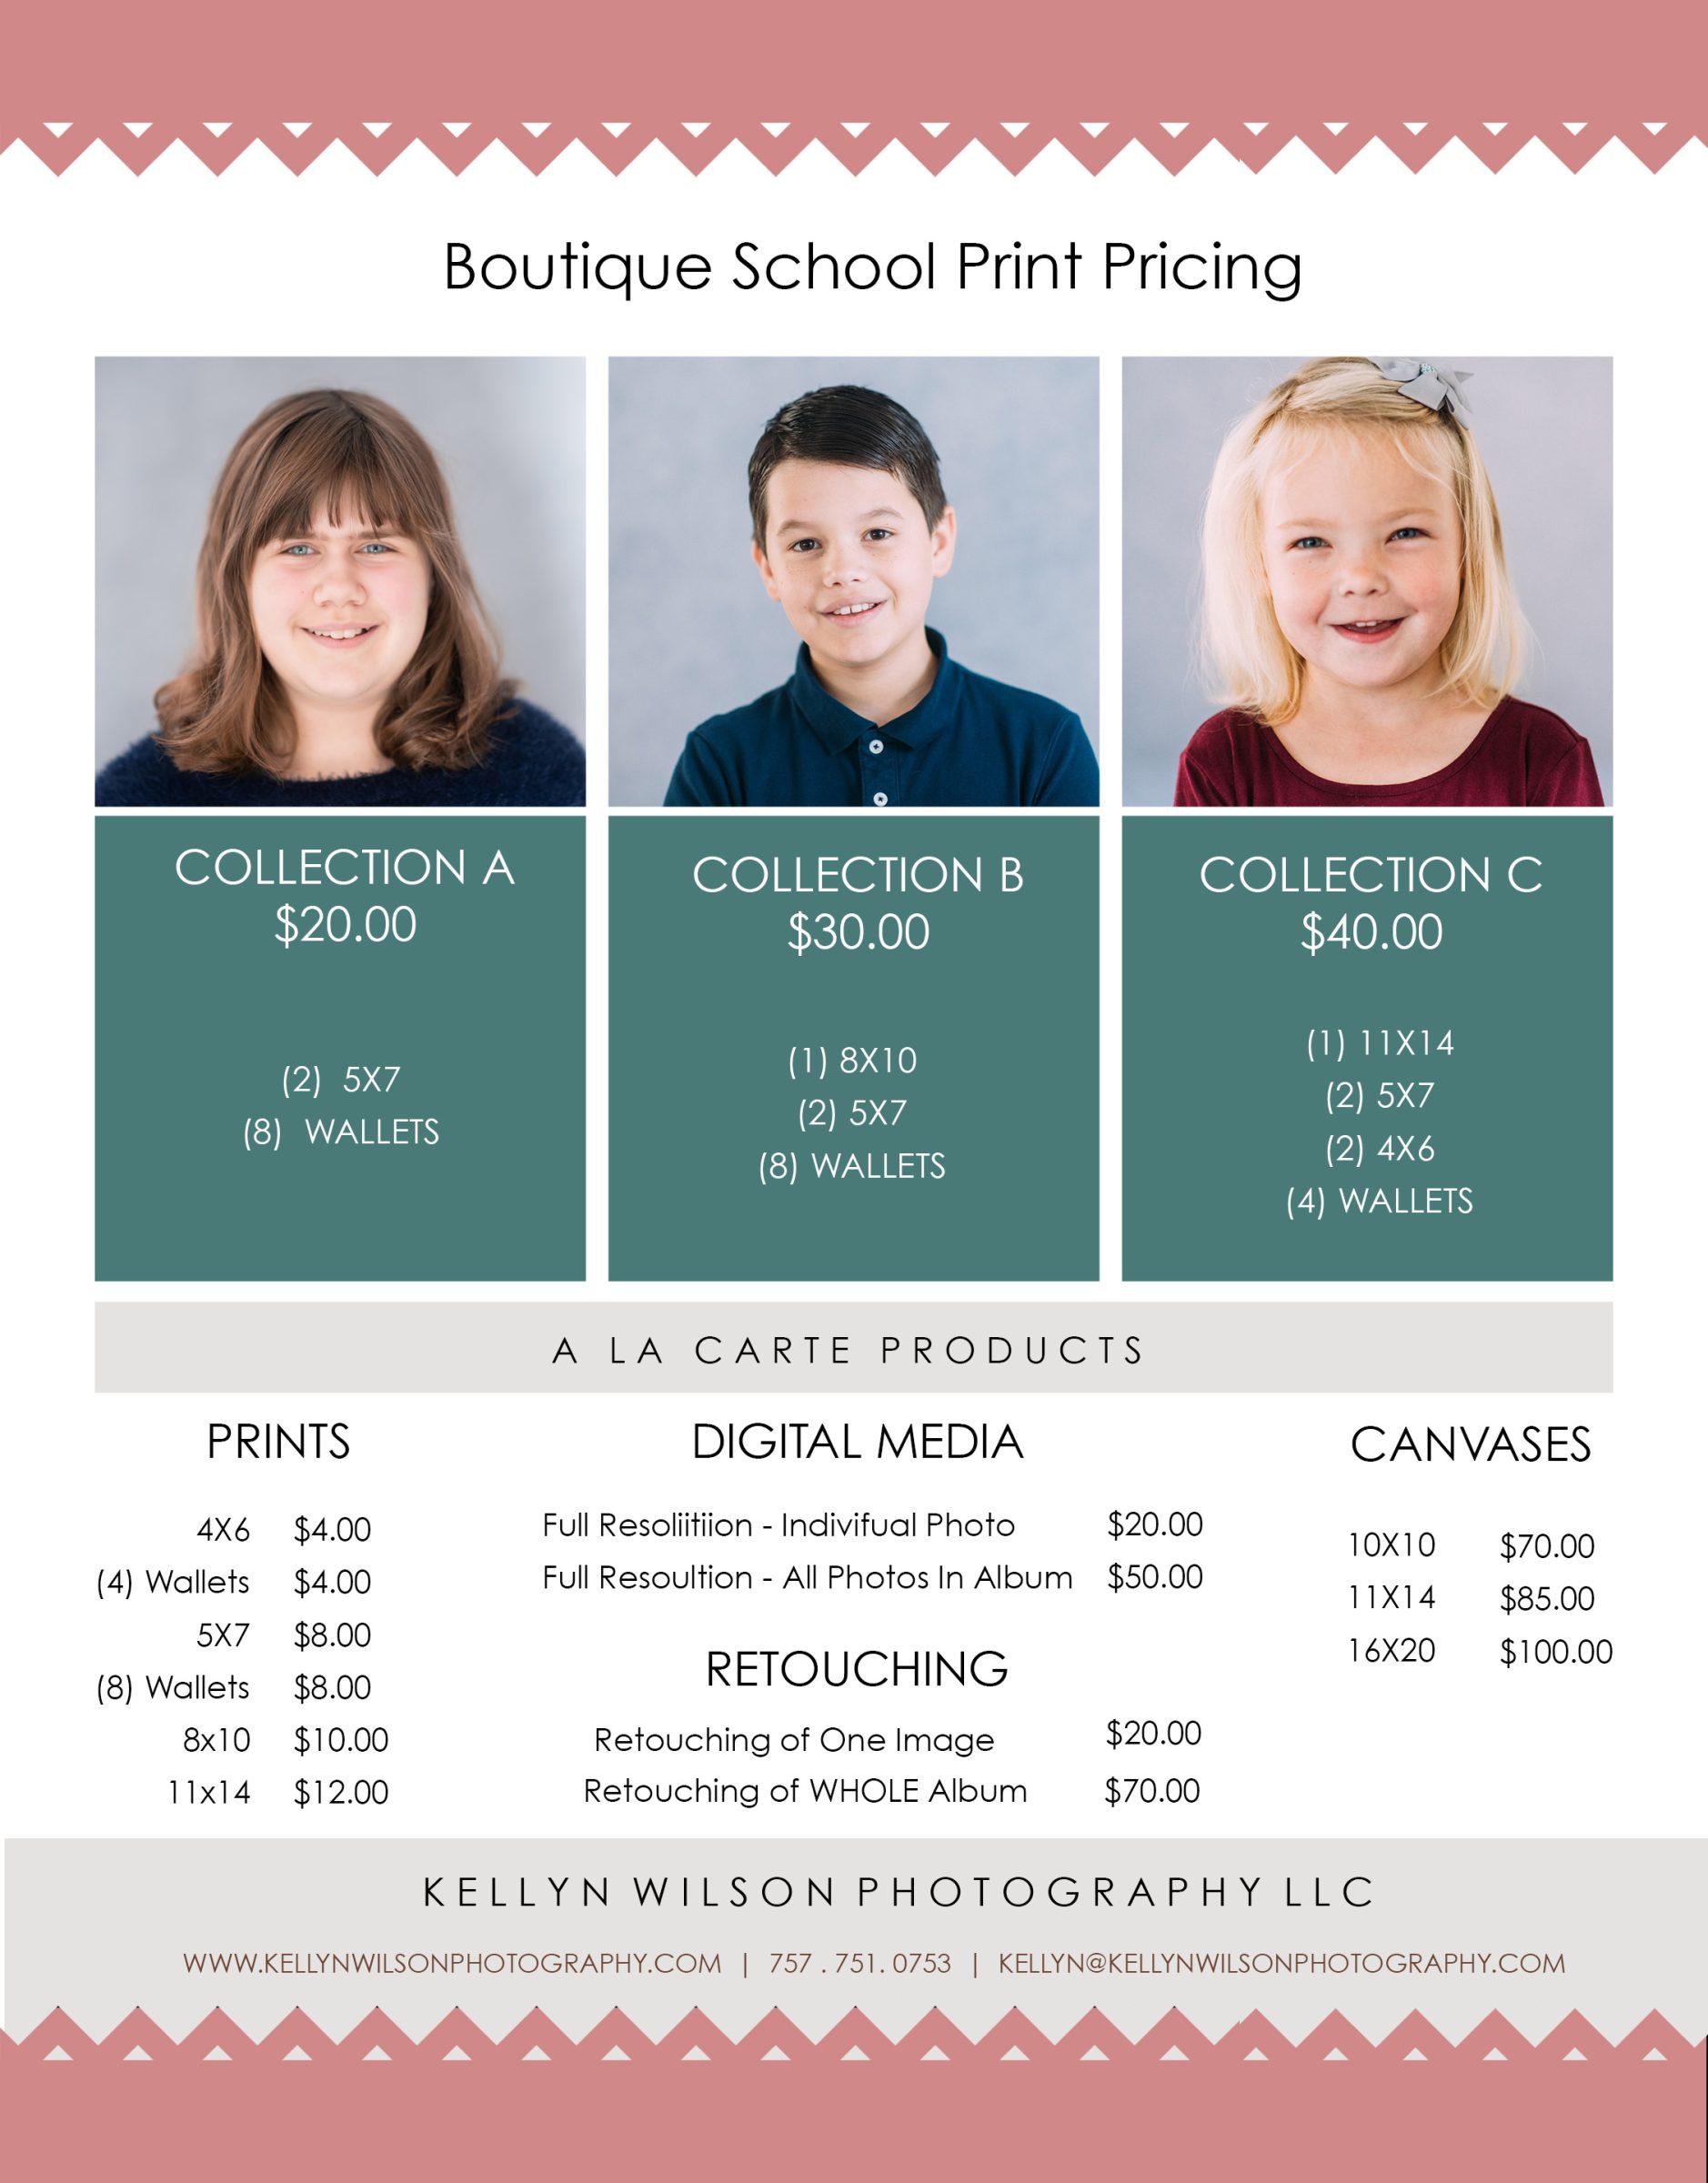 Boutique School Pricing